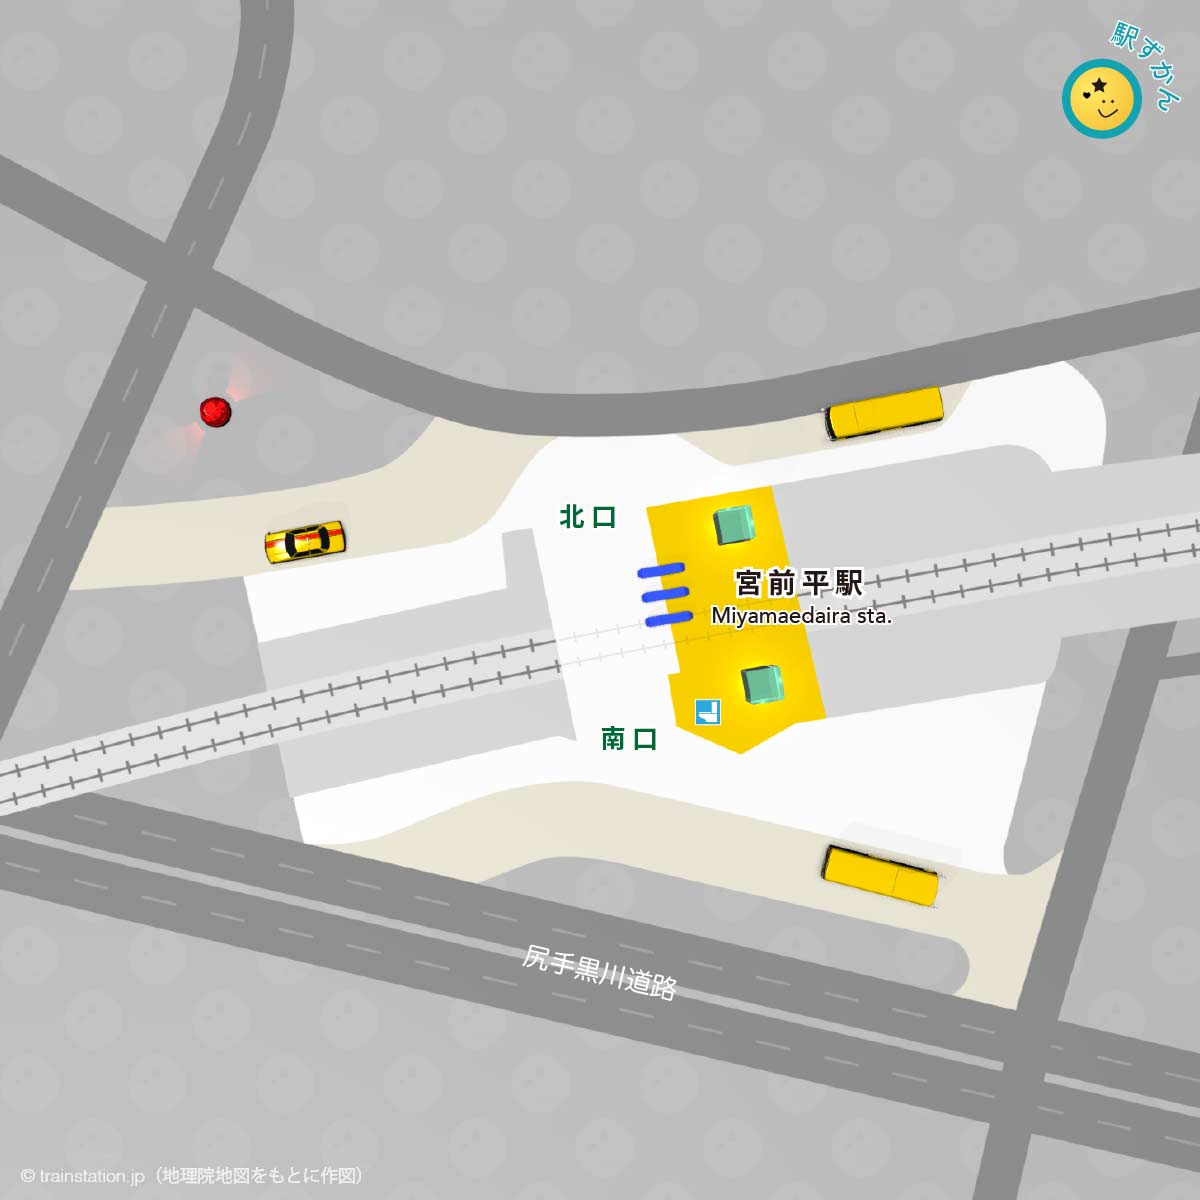 わかりやすい宮前平駅構内図と周辺マップ